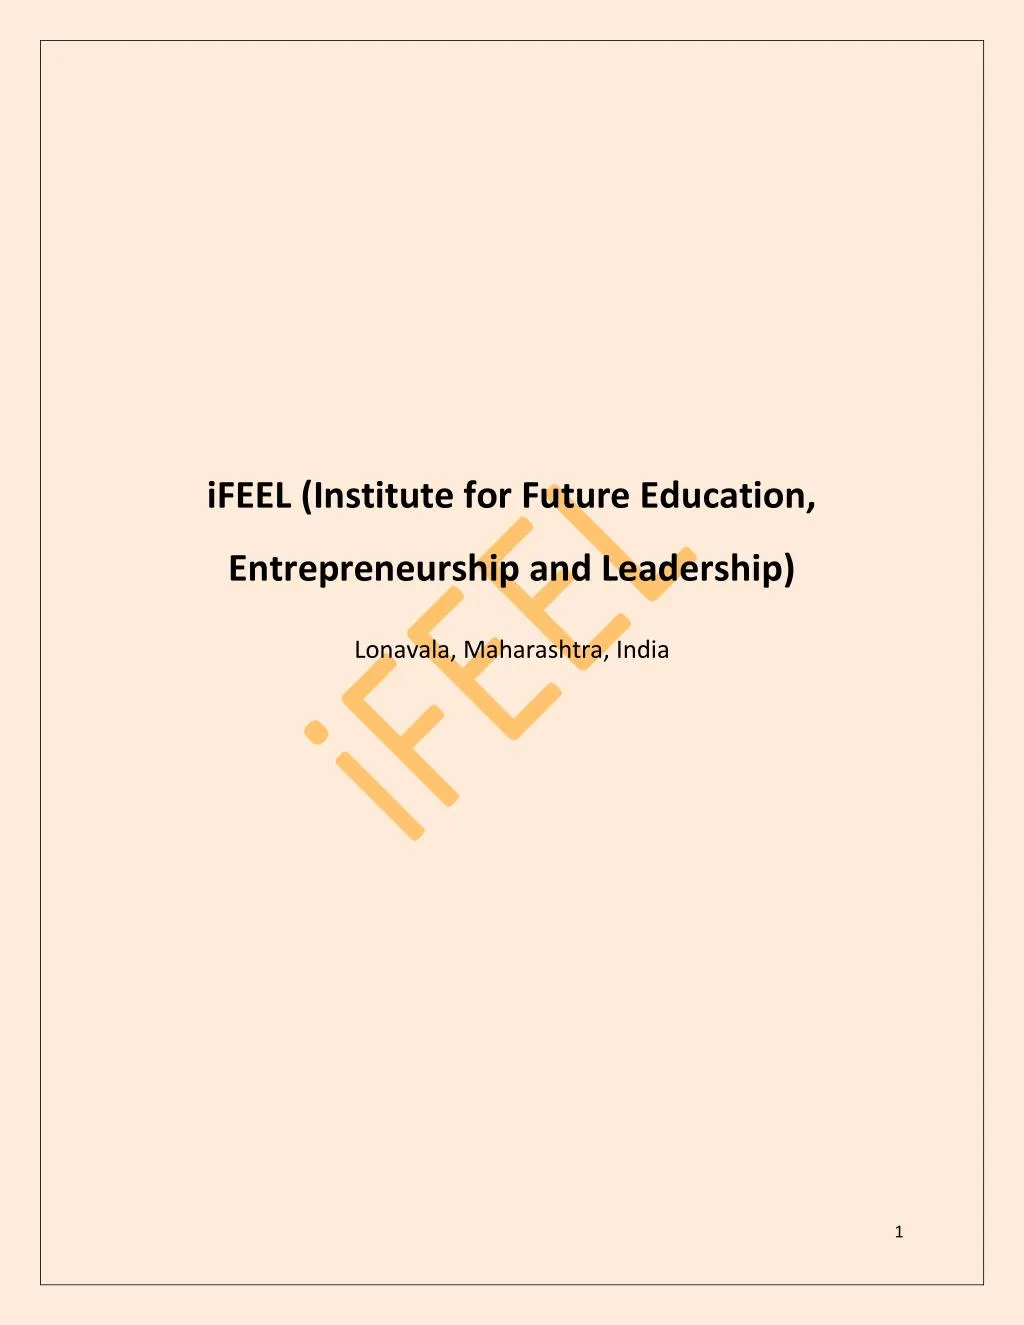 ifeel institute for future education